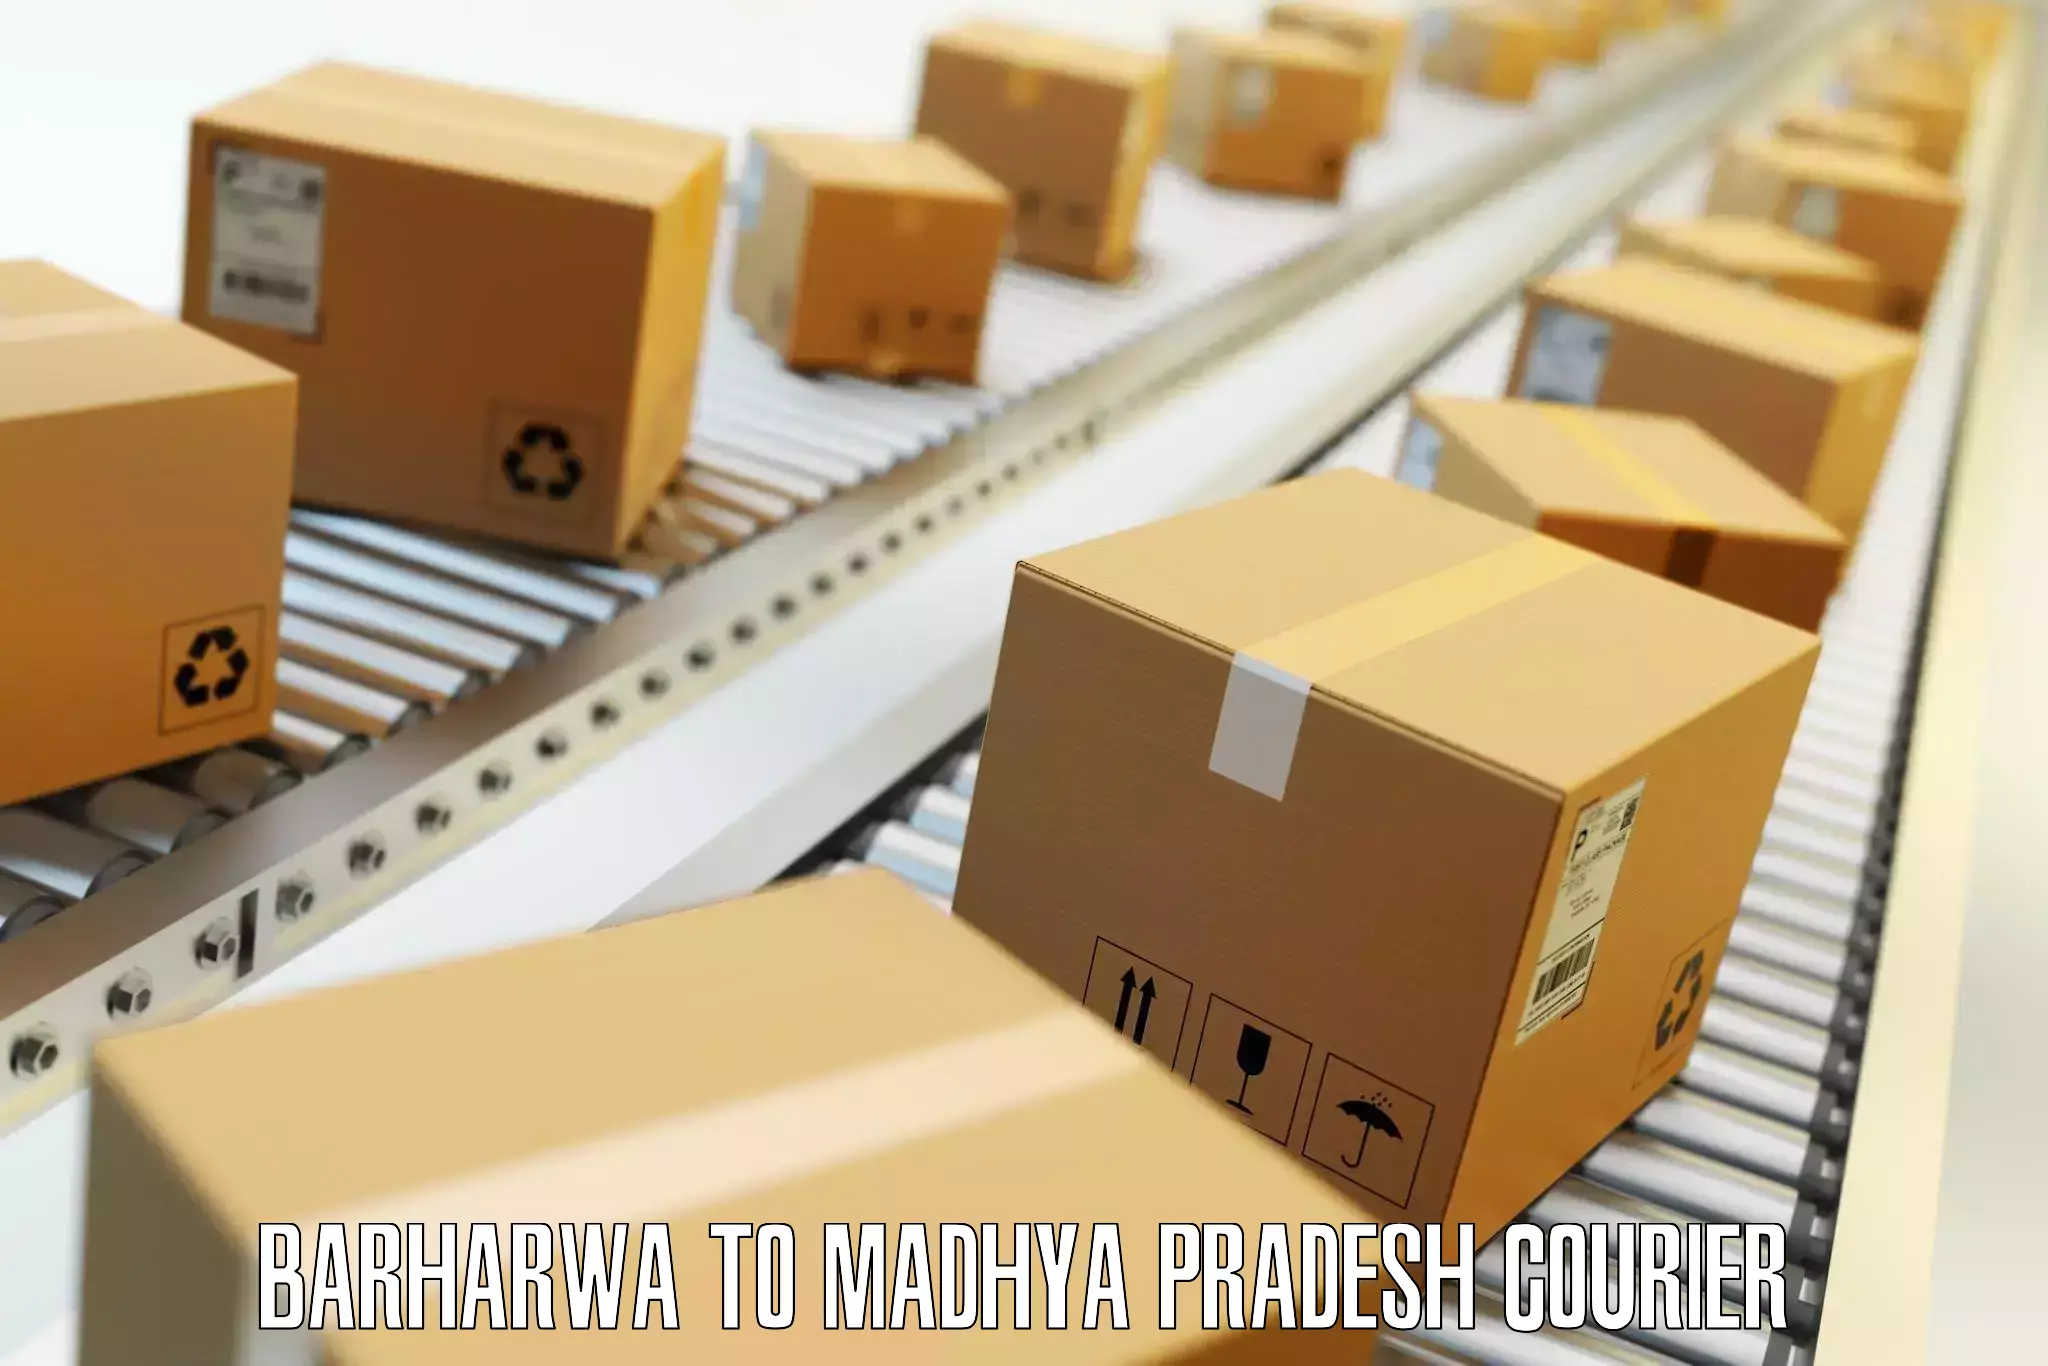 High-quality baggage shipment in Barharwa to Ghatiya